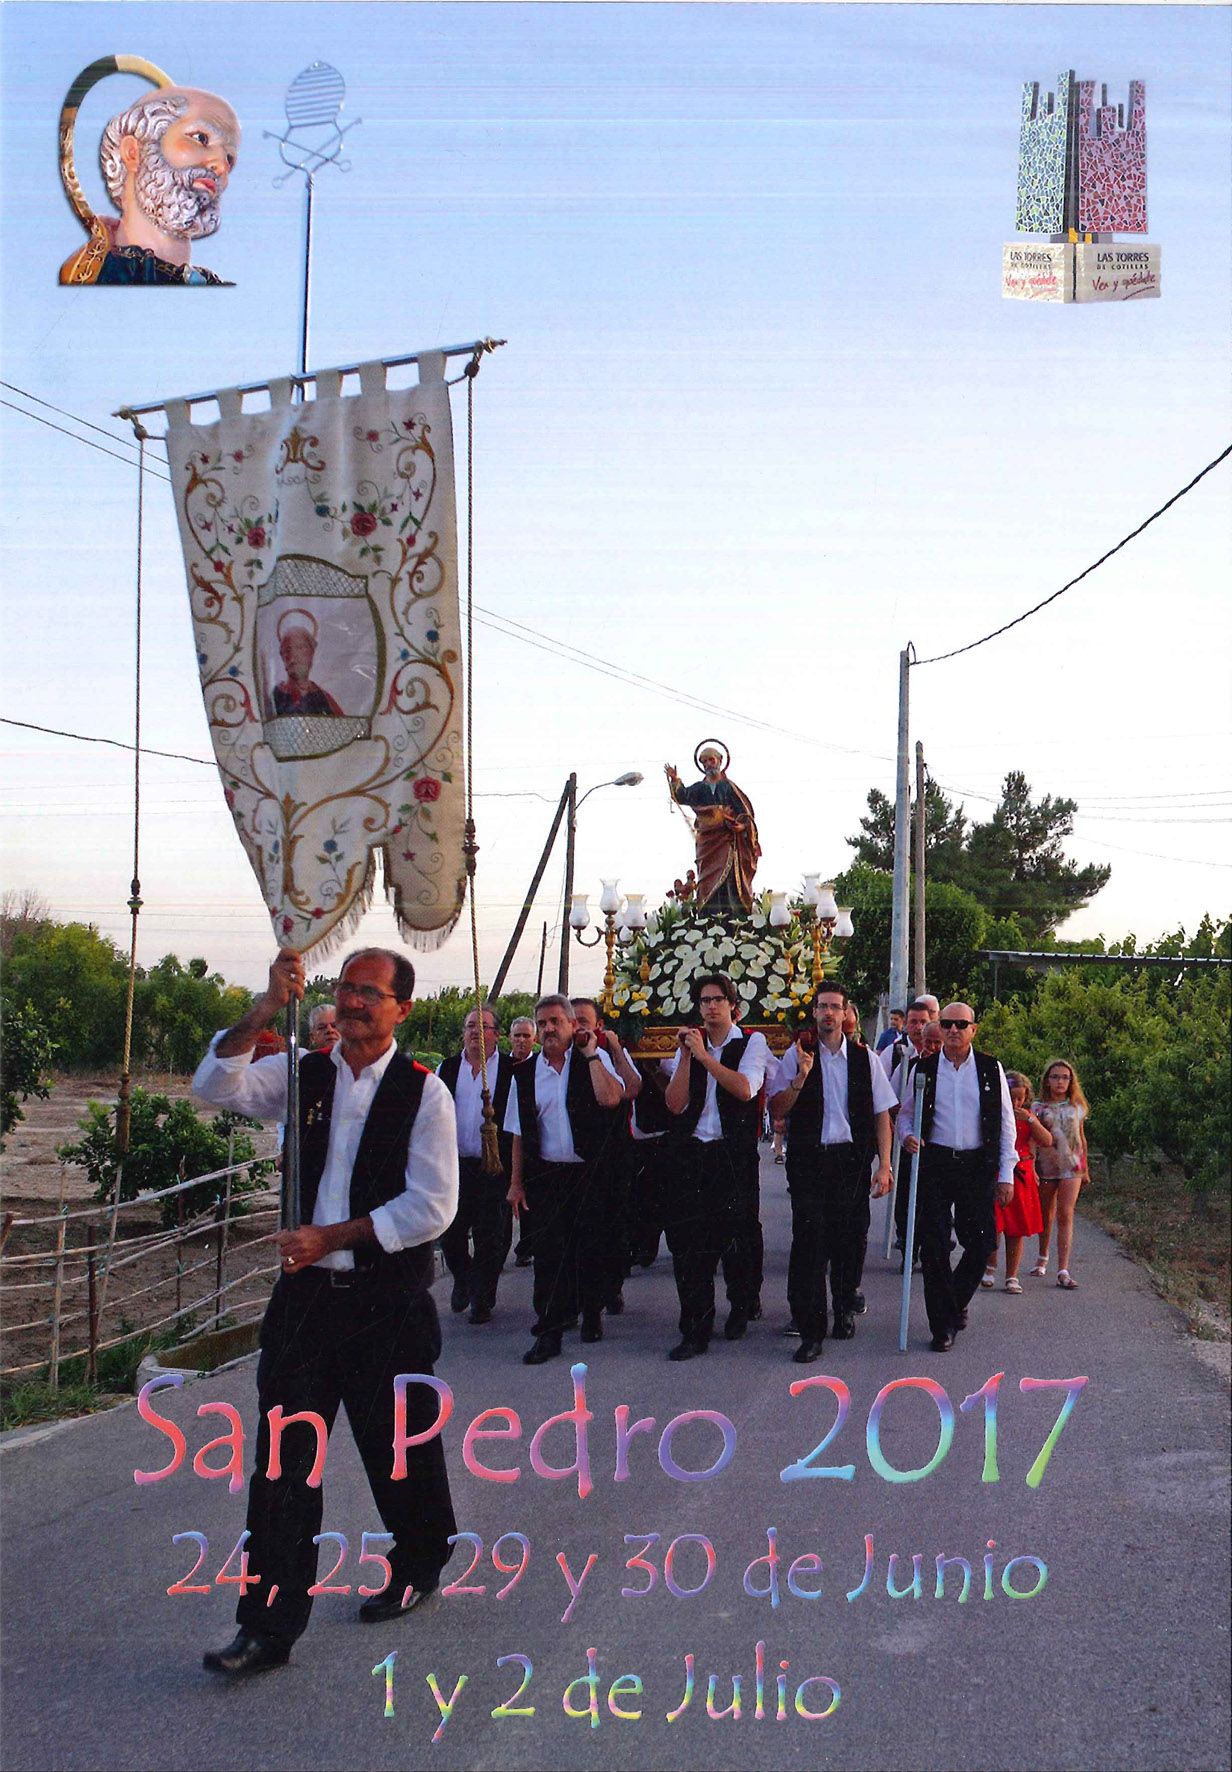 Fiesta de San Pedro 2017 - Las Torres de Cotillas